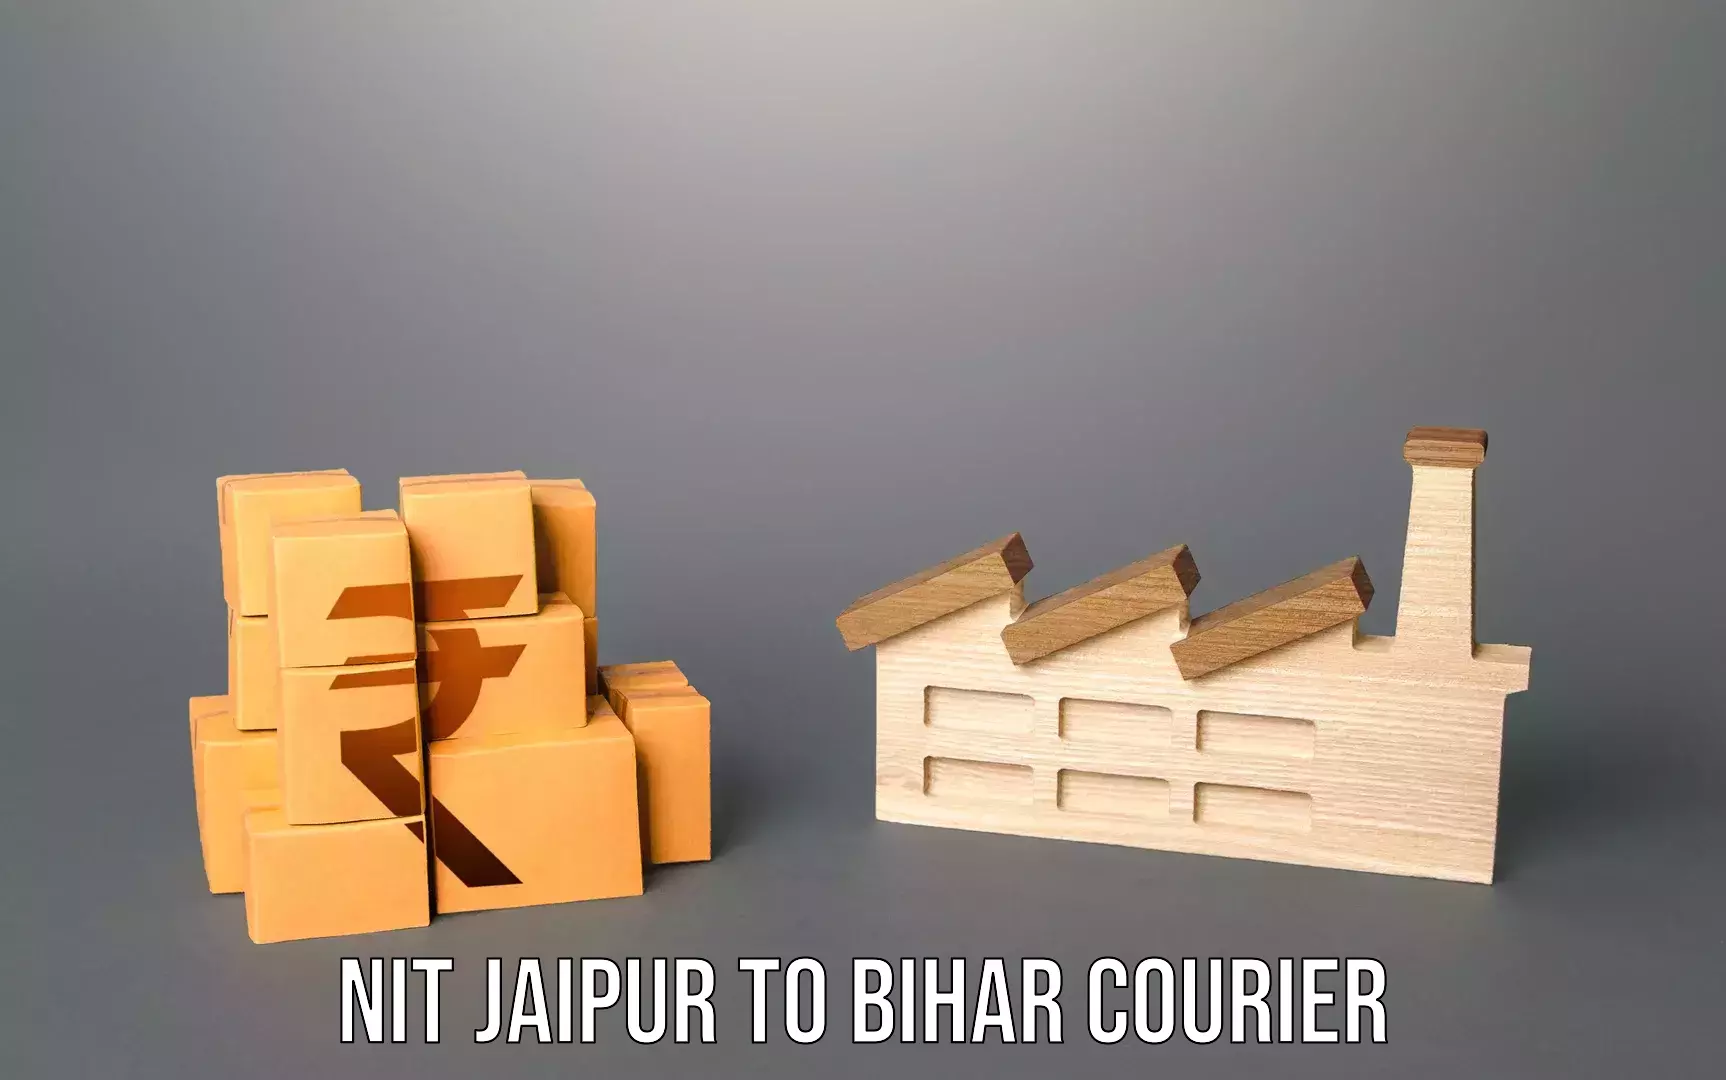 Luggage transport service NIT Jaipur to Alamnagar